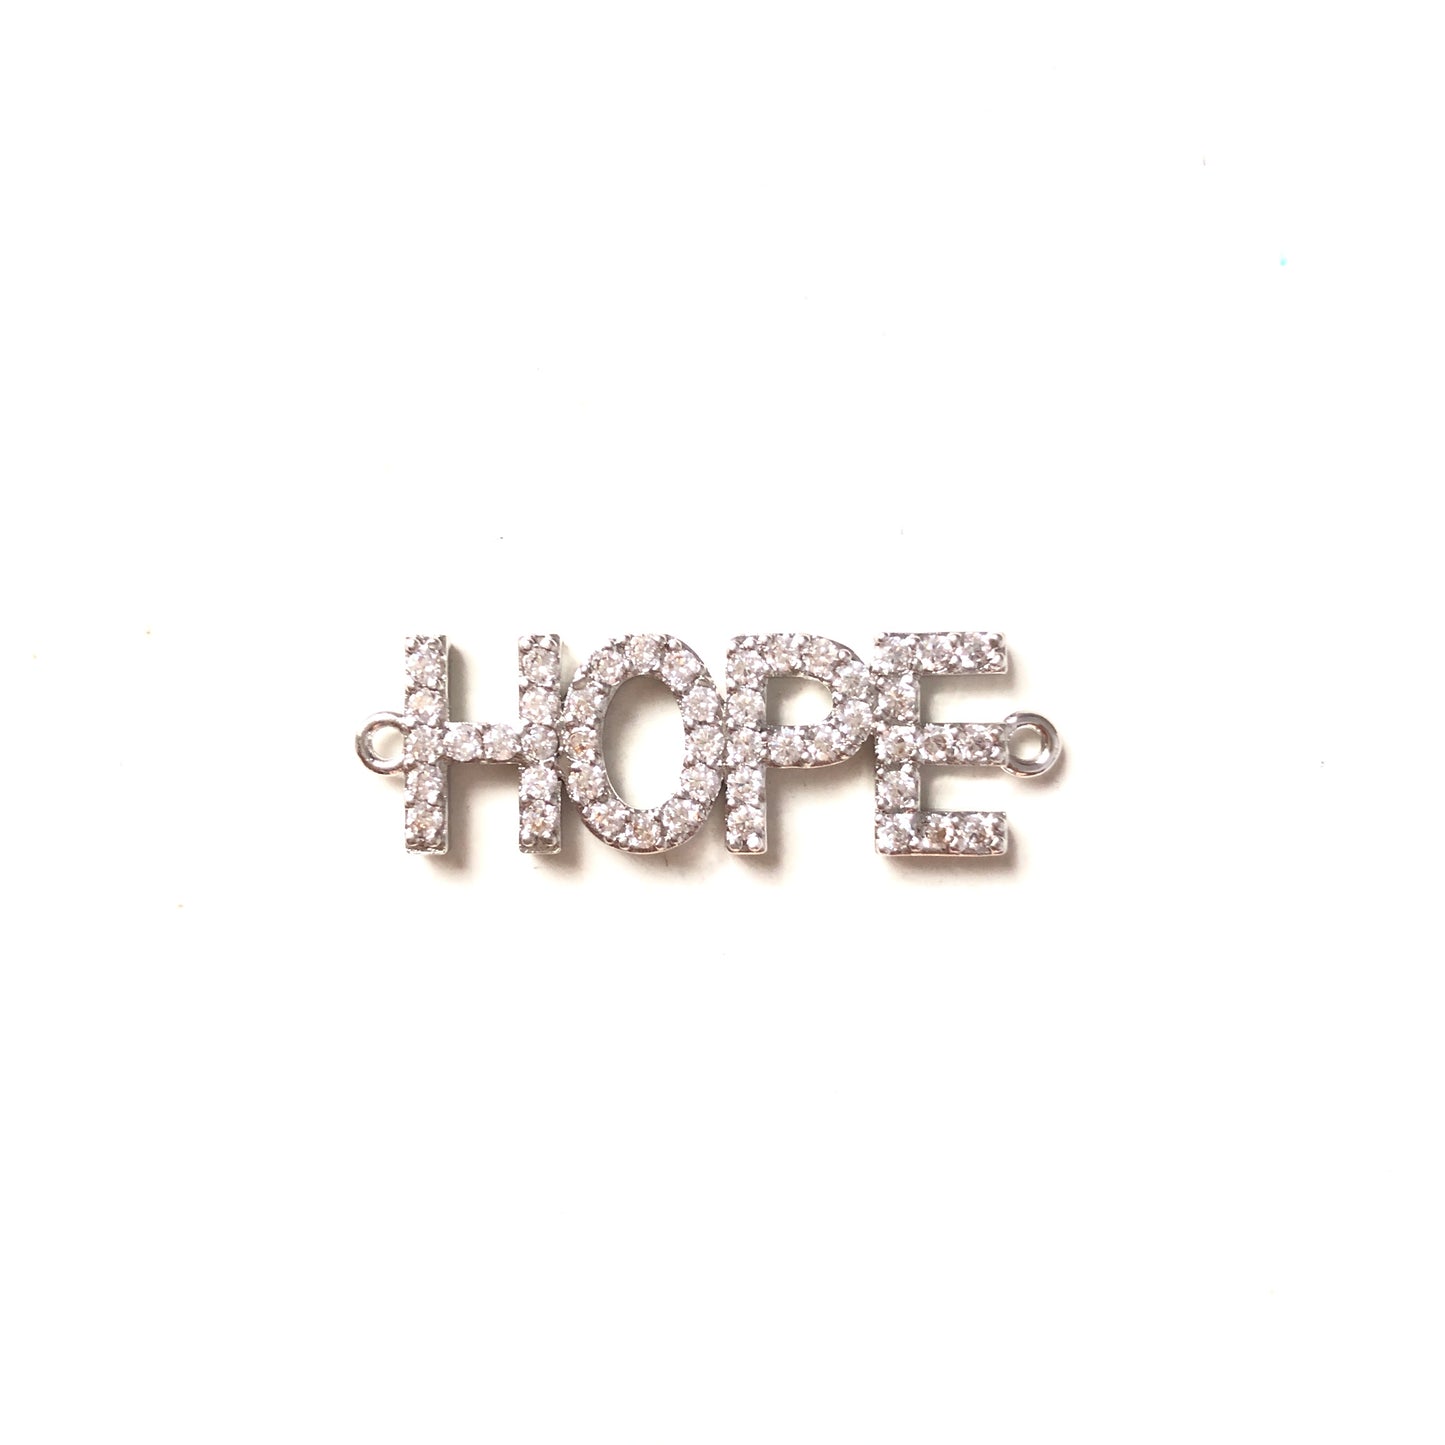 10pcs/lot 32*10mm CZ Paved HOPE Word Connectors Silver CZ Paved Connectors Word Connectors Charms Beads Beyond